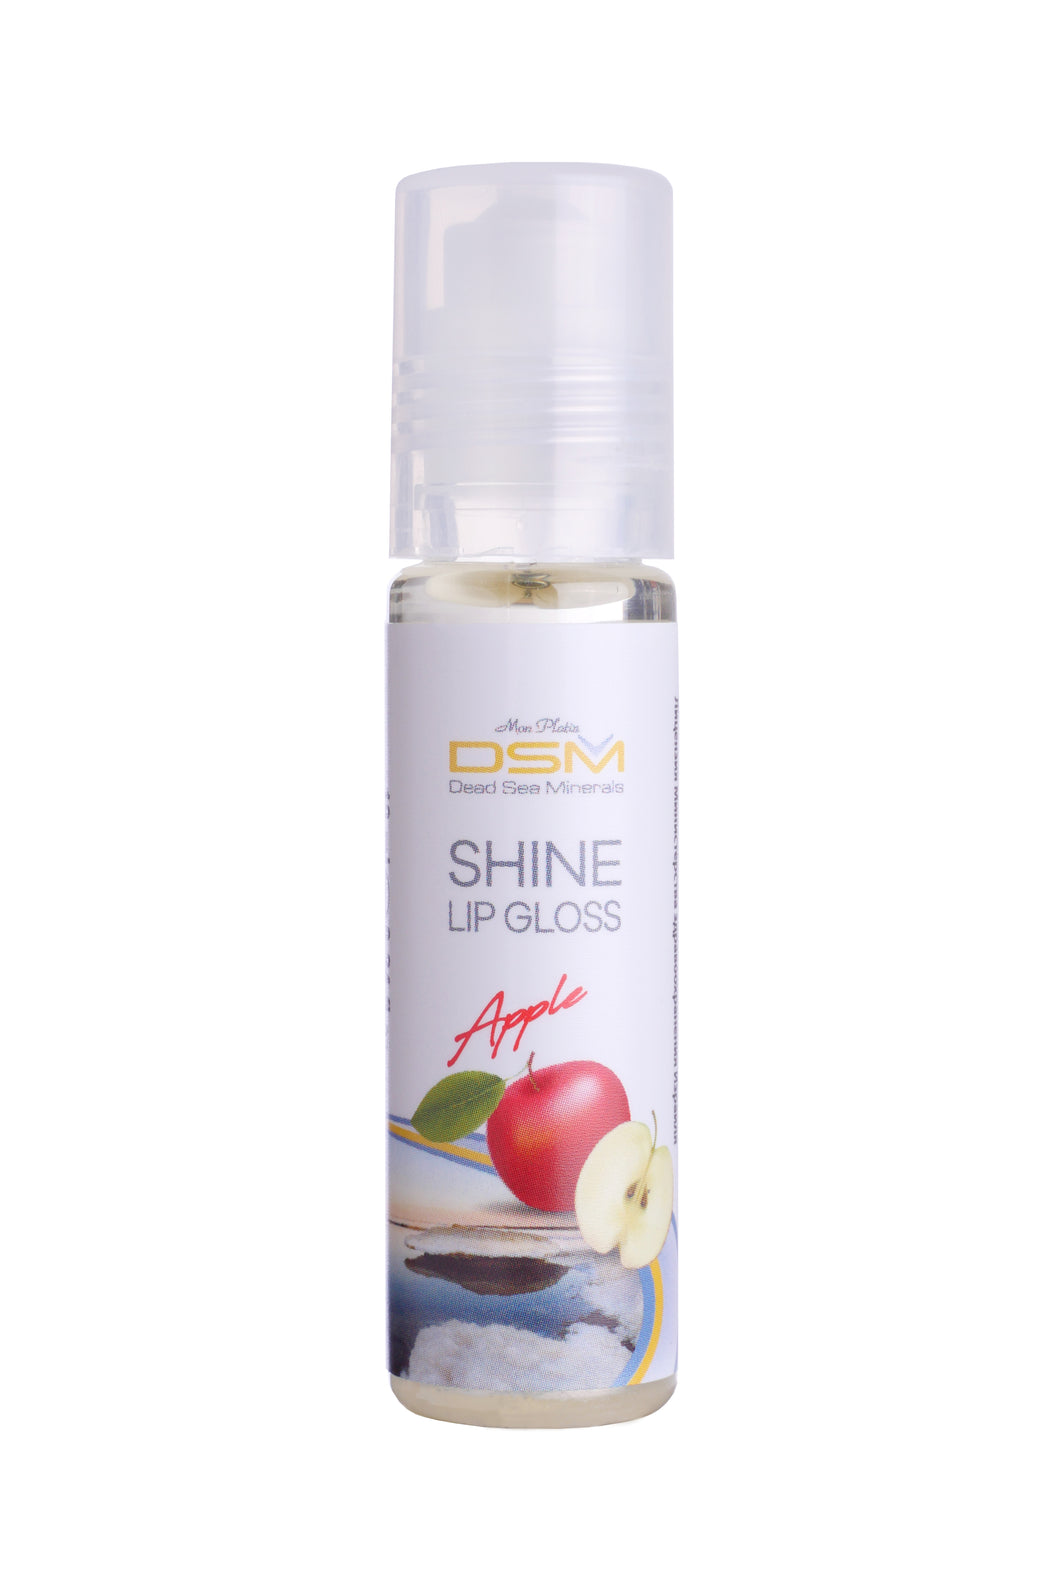 Shine lip gloss Fruit Kiss Apple flavor (DSM300)